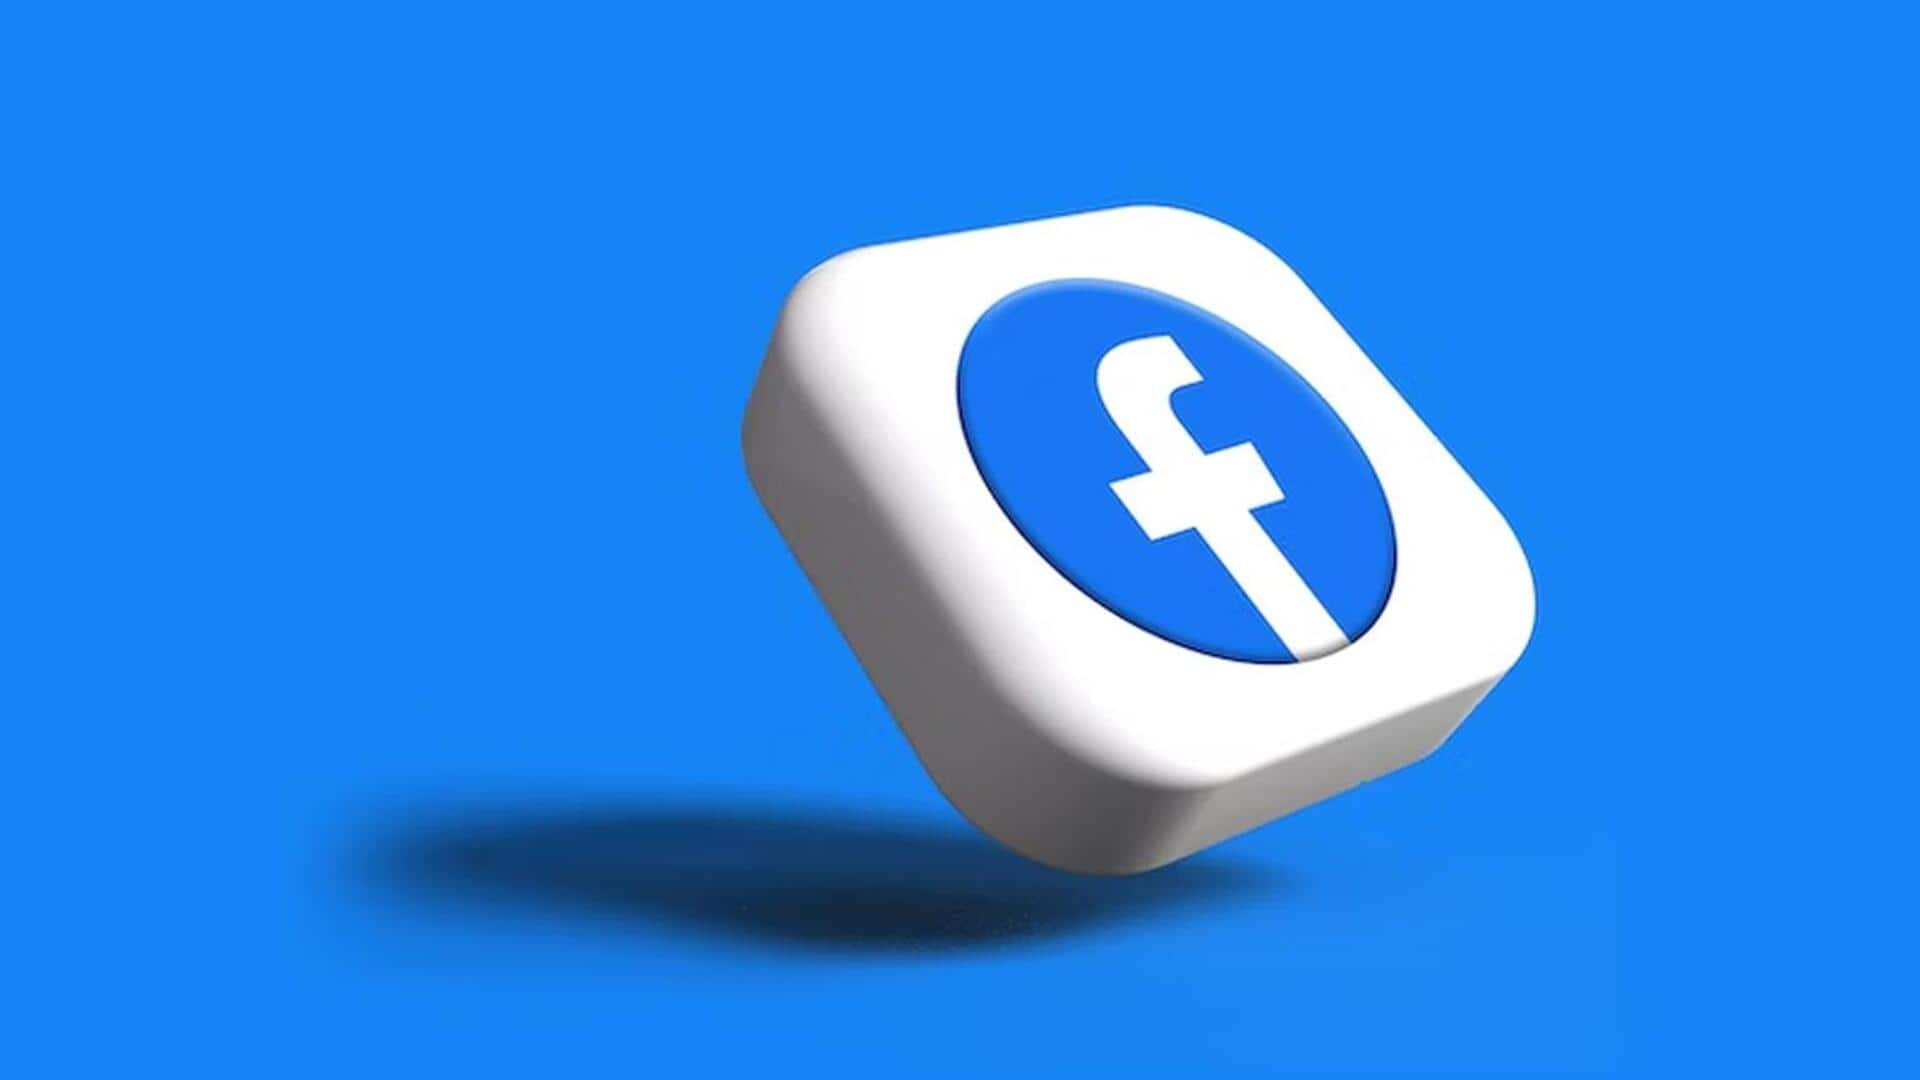 फेसबुक यूजर्स रहें सावधान, वेरीफाइड अकाउंट हैक कर संदिग्ध लिंक शेयर कर रहे हैं जालसाज